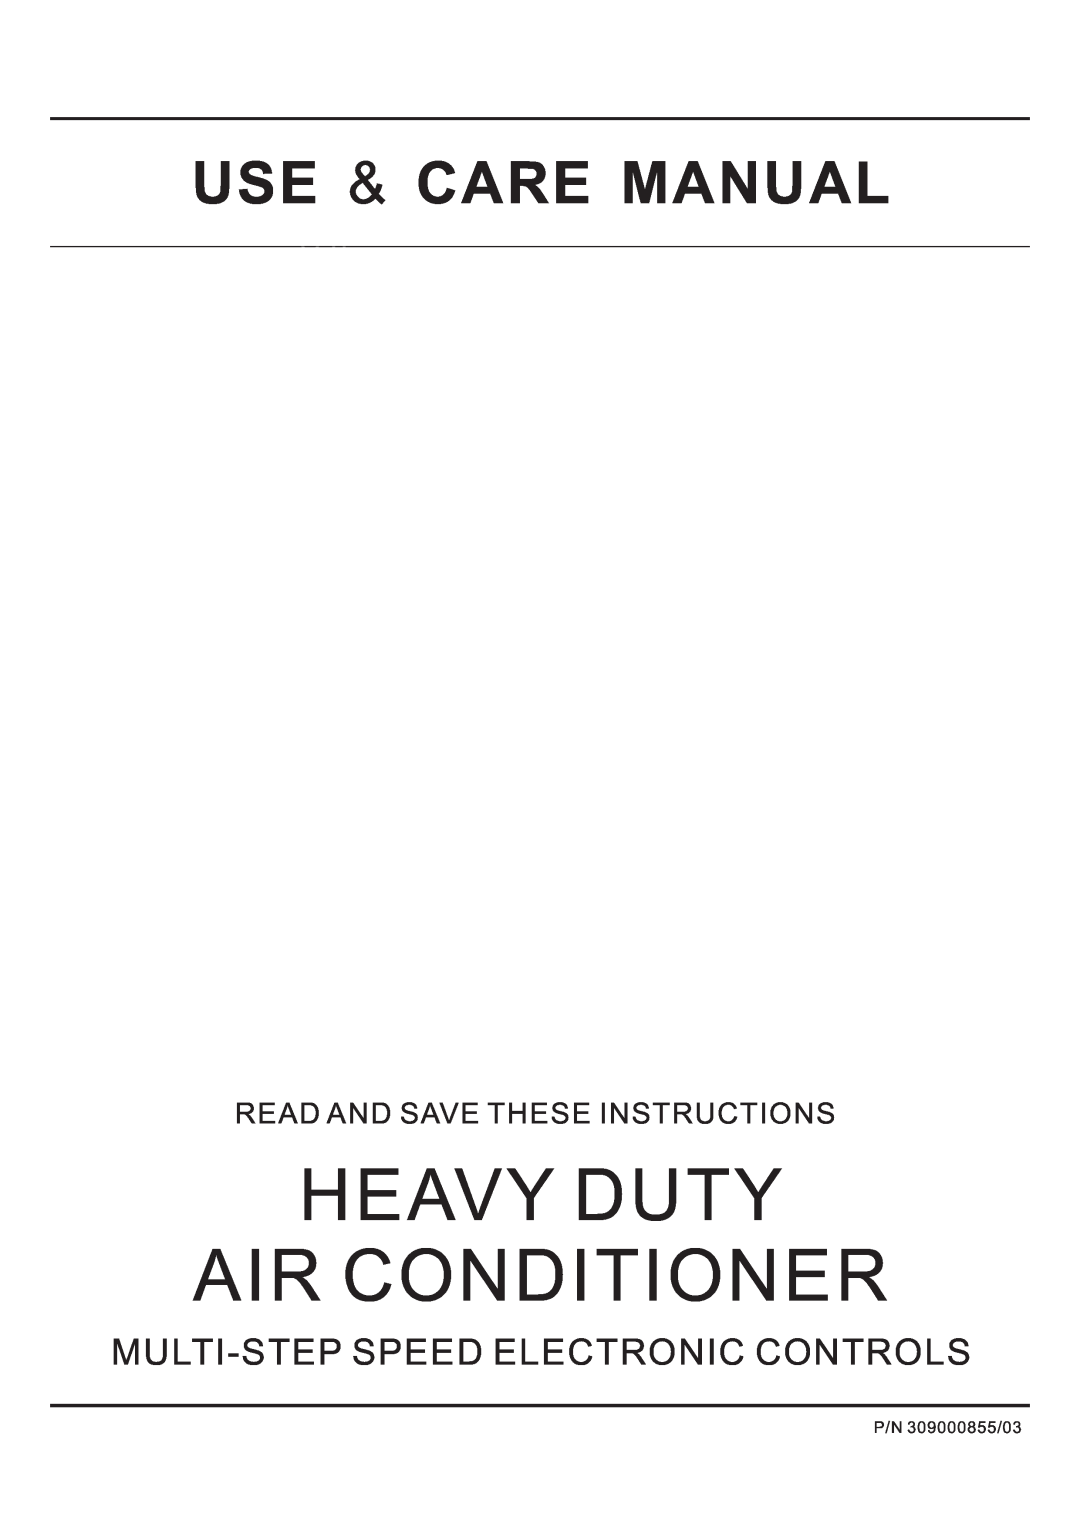 Frigidaire HEAVY DUTY AIR CONDITIONER manual Heavy Duty Air Conditioner, Use & Care Manual 